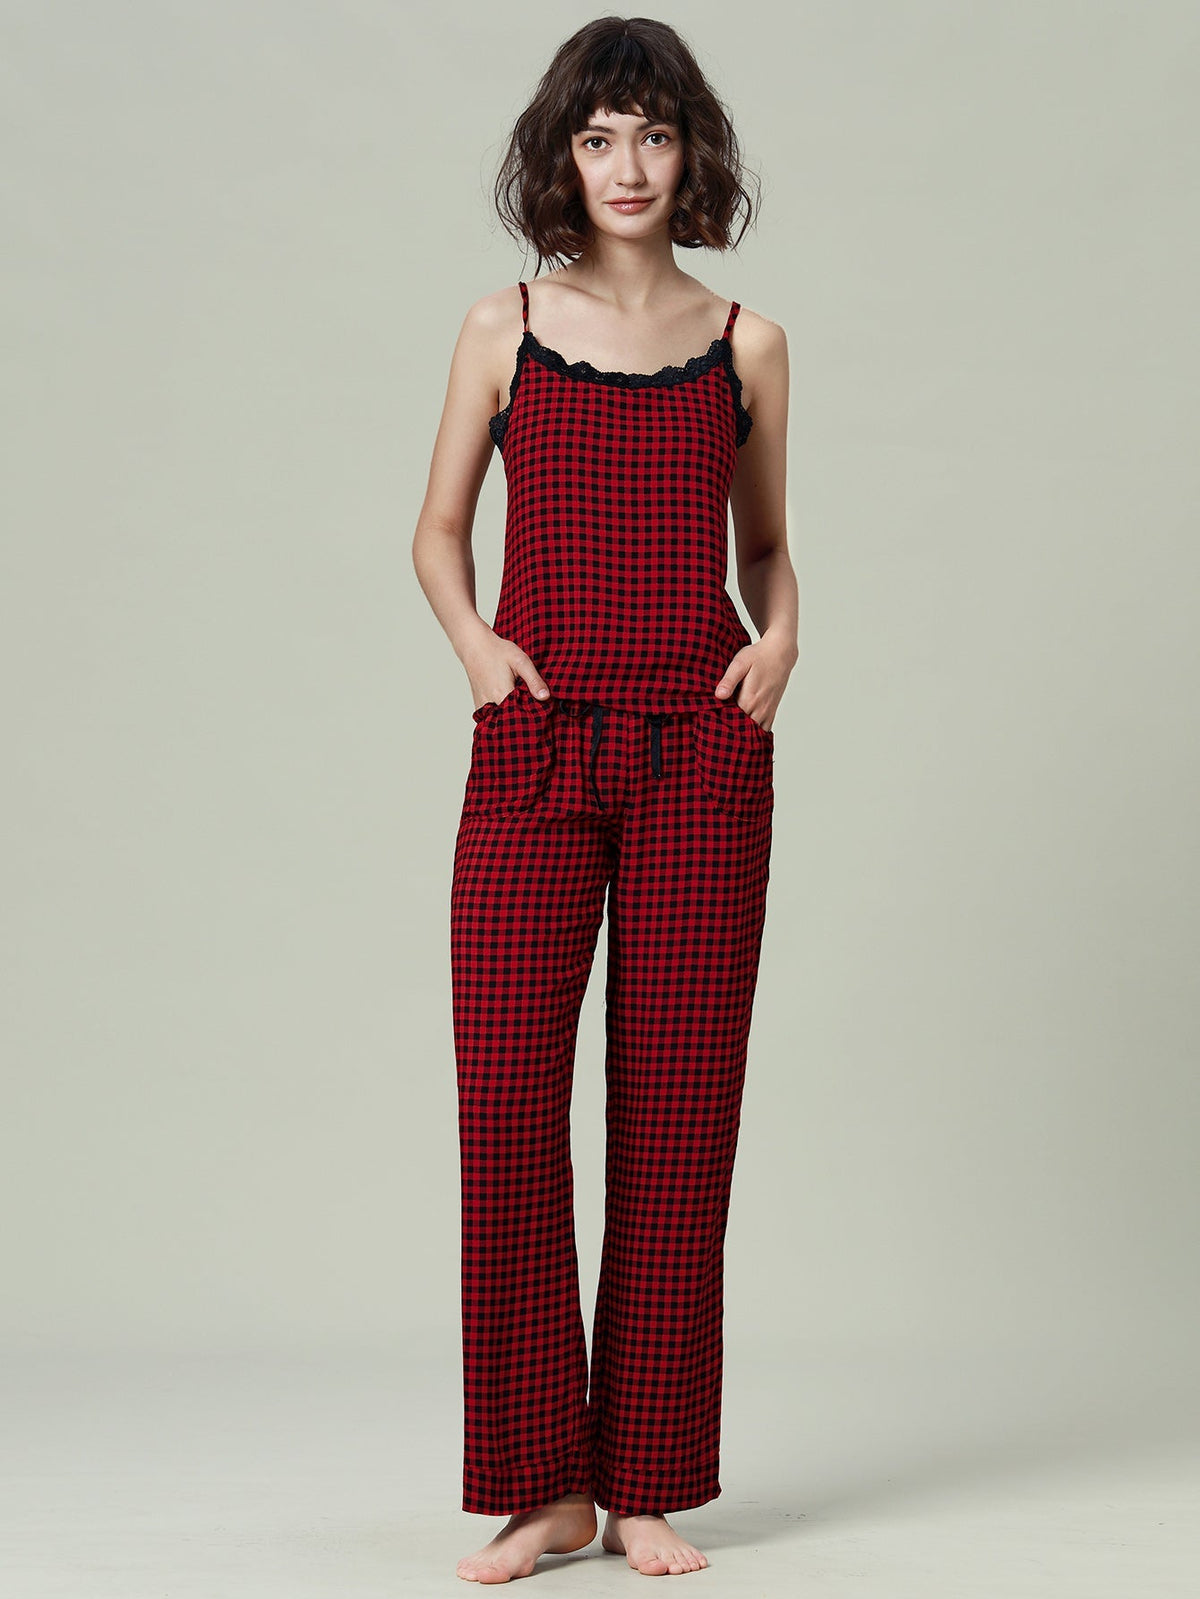 Womens Pajamas Set Cami Top and Capris Pants Sleepwear Pjs Set S-XL Sai Feel